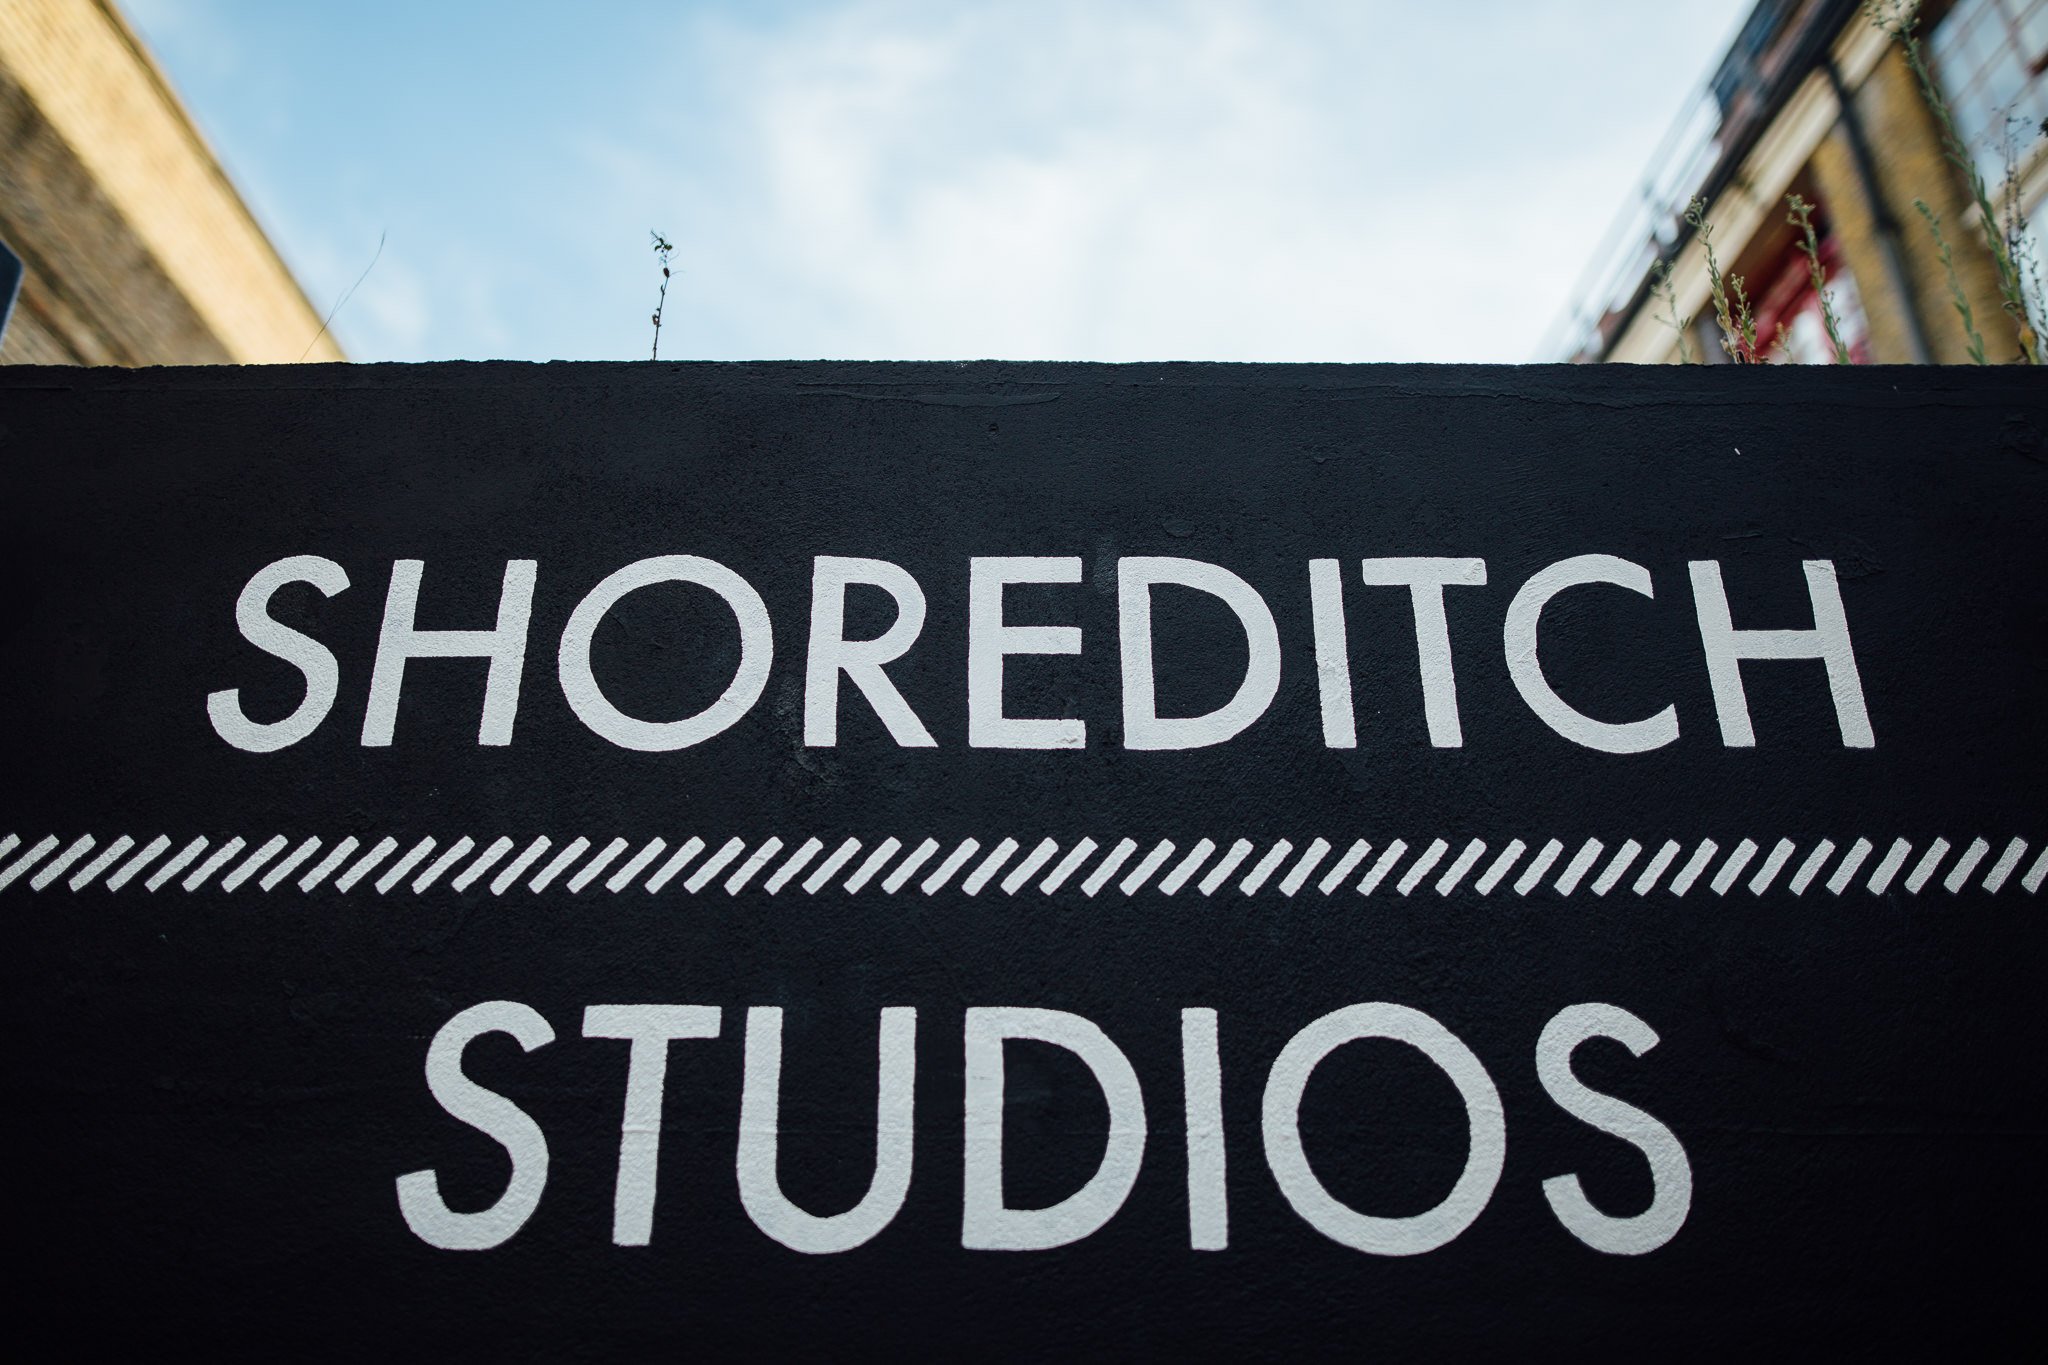  Shoreditch Studios sign 